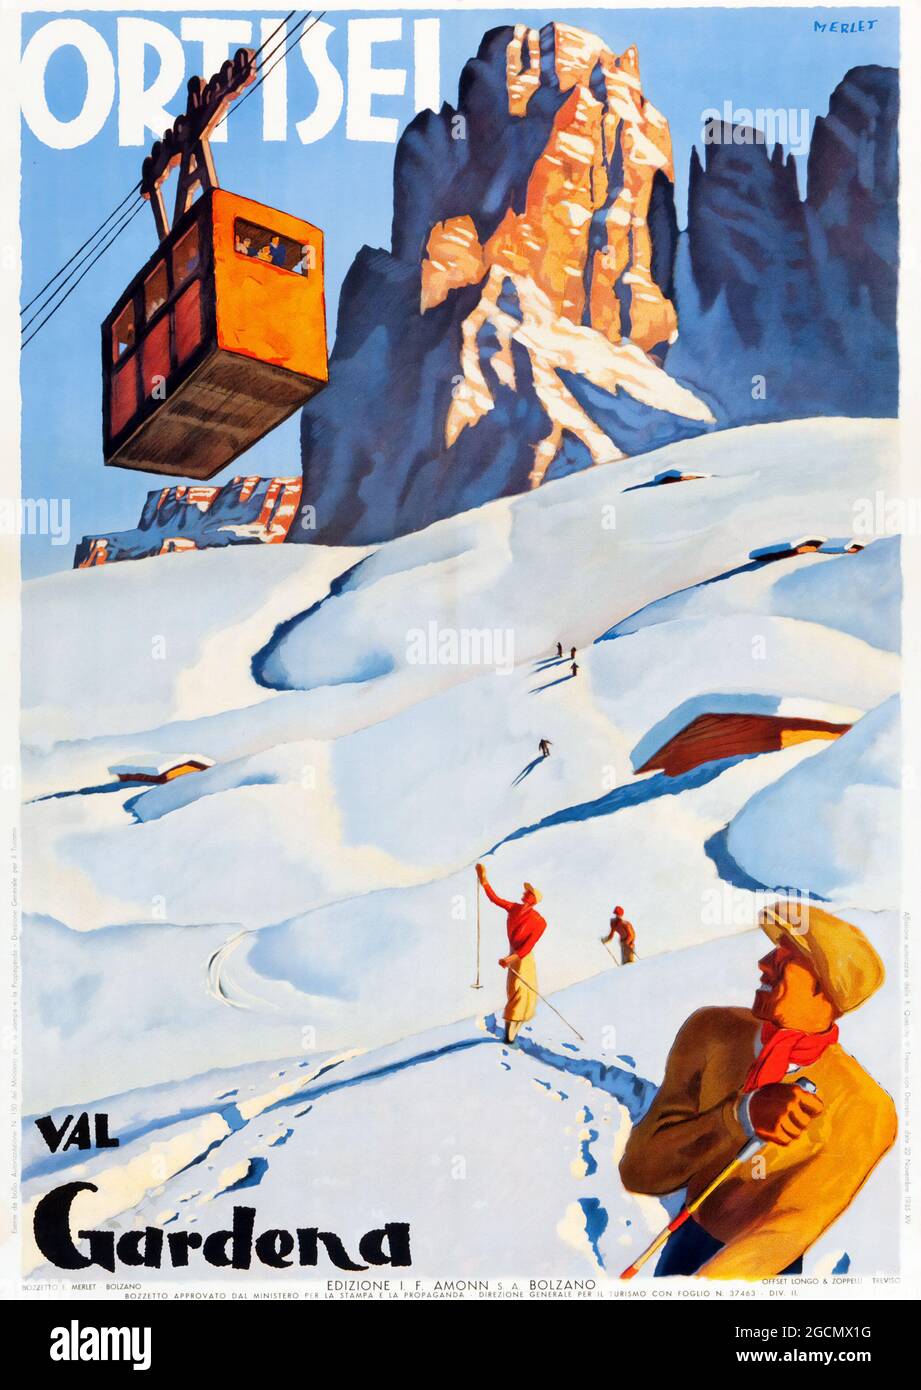 Poster di viaggio per l'Italia (c 1935). Poster "Ortisei, Val Gardena", artista Erwin Merlet (1886-1939). Una giornata di sole a Ortisei e una cabinovia sopra. Foto Stock